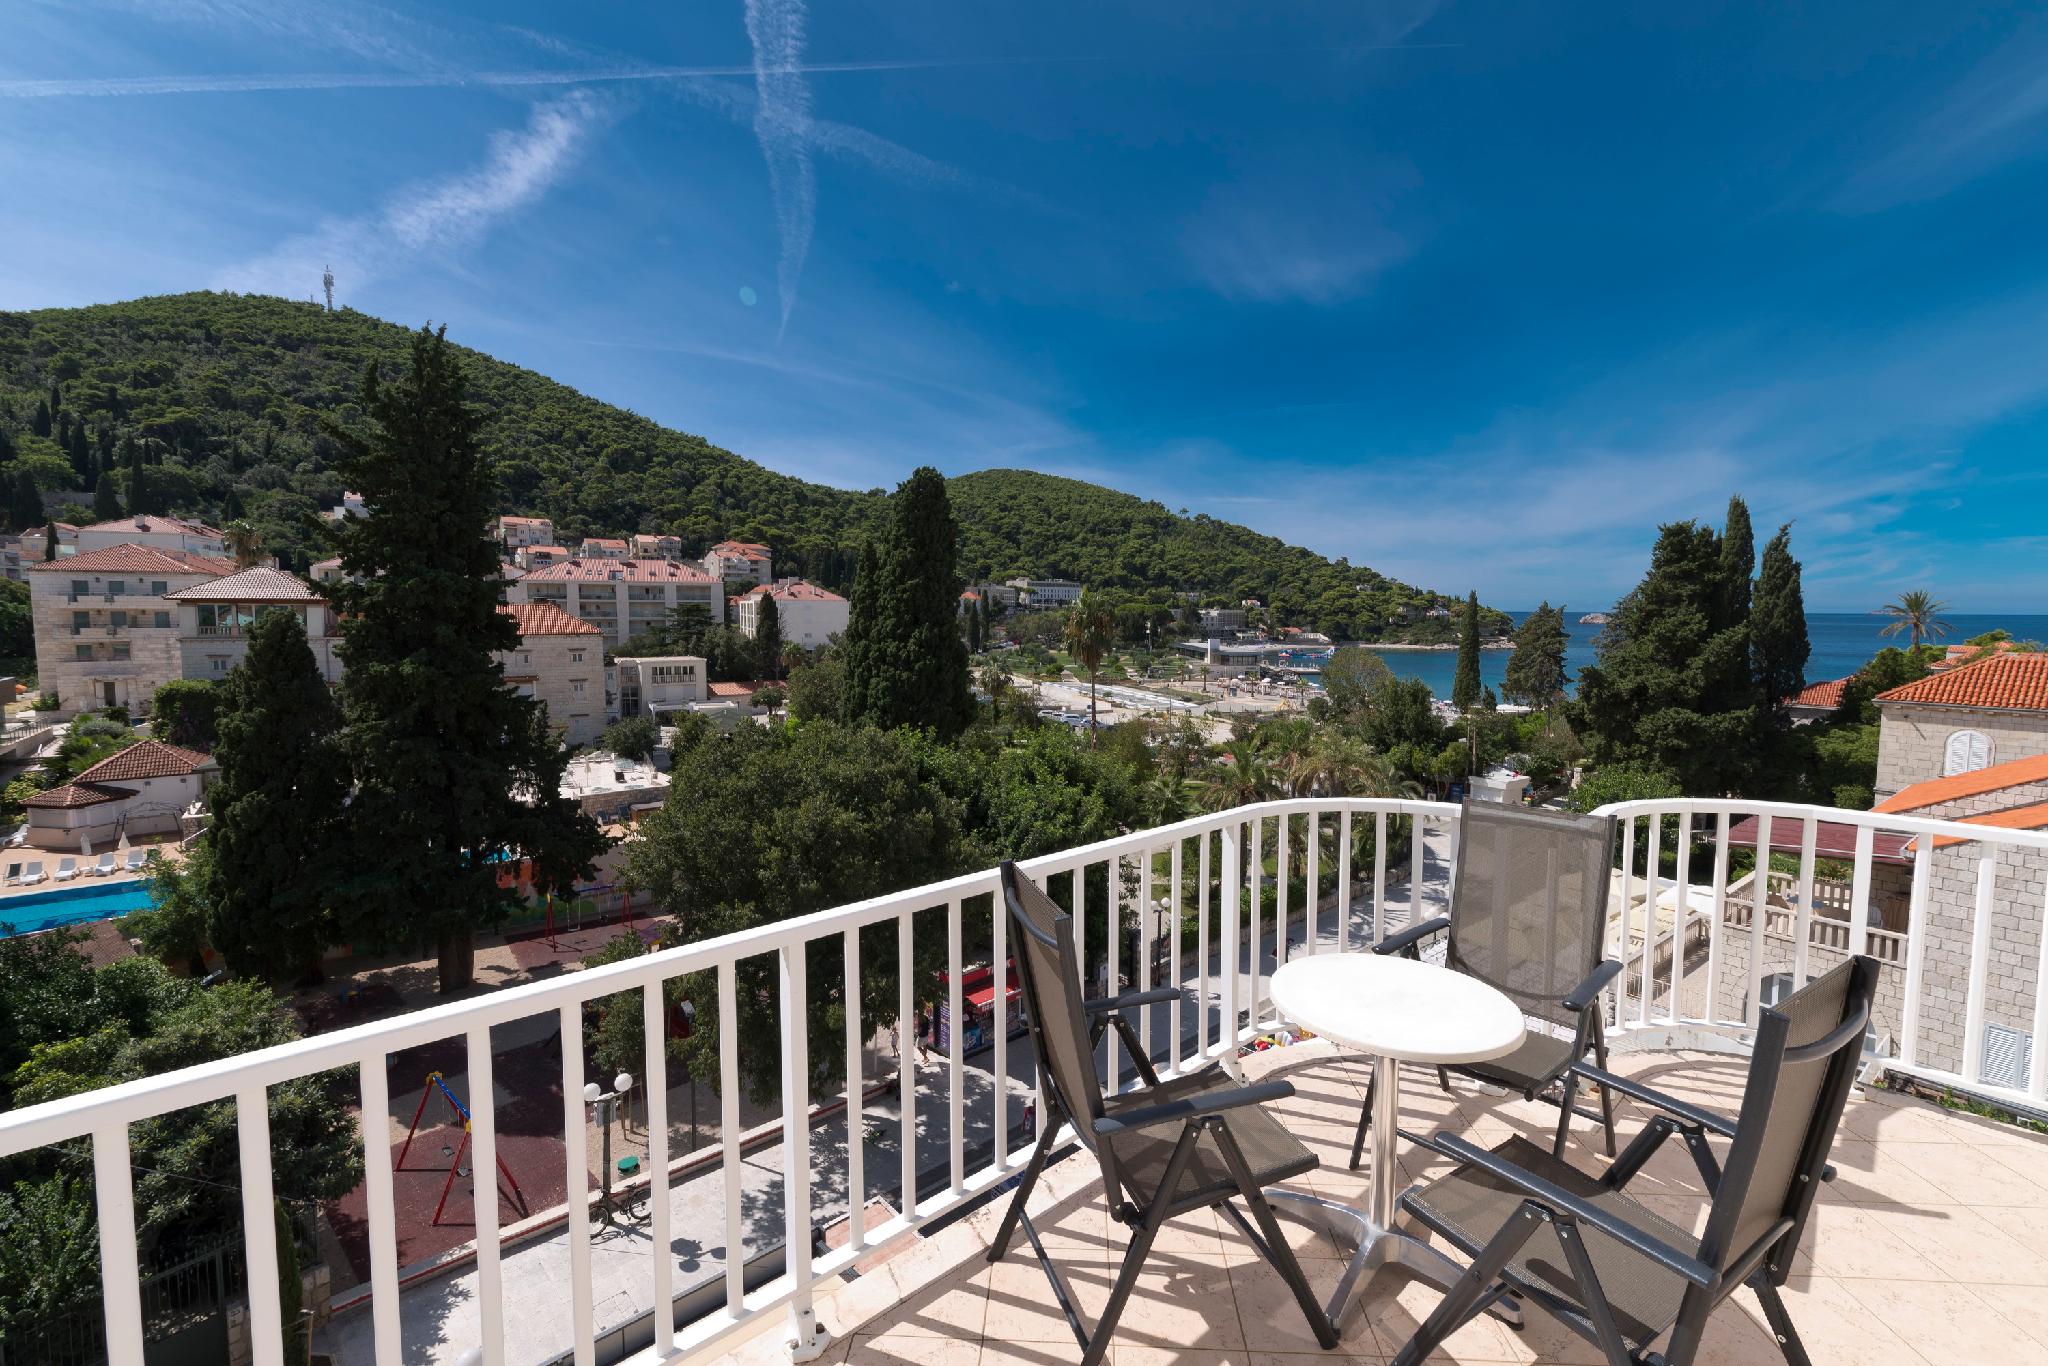 Hotel Perla Dubrovnik 写真